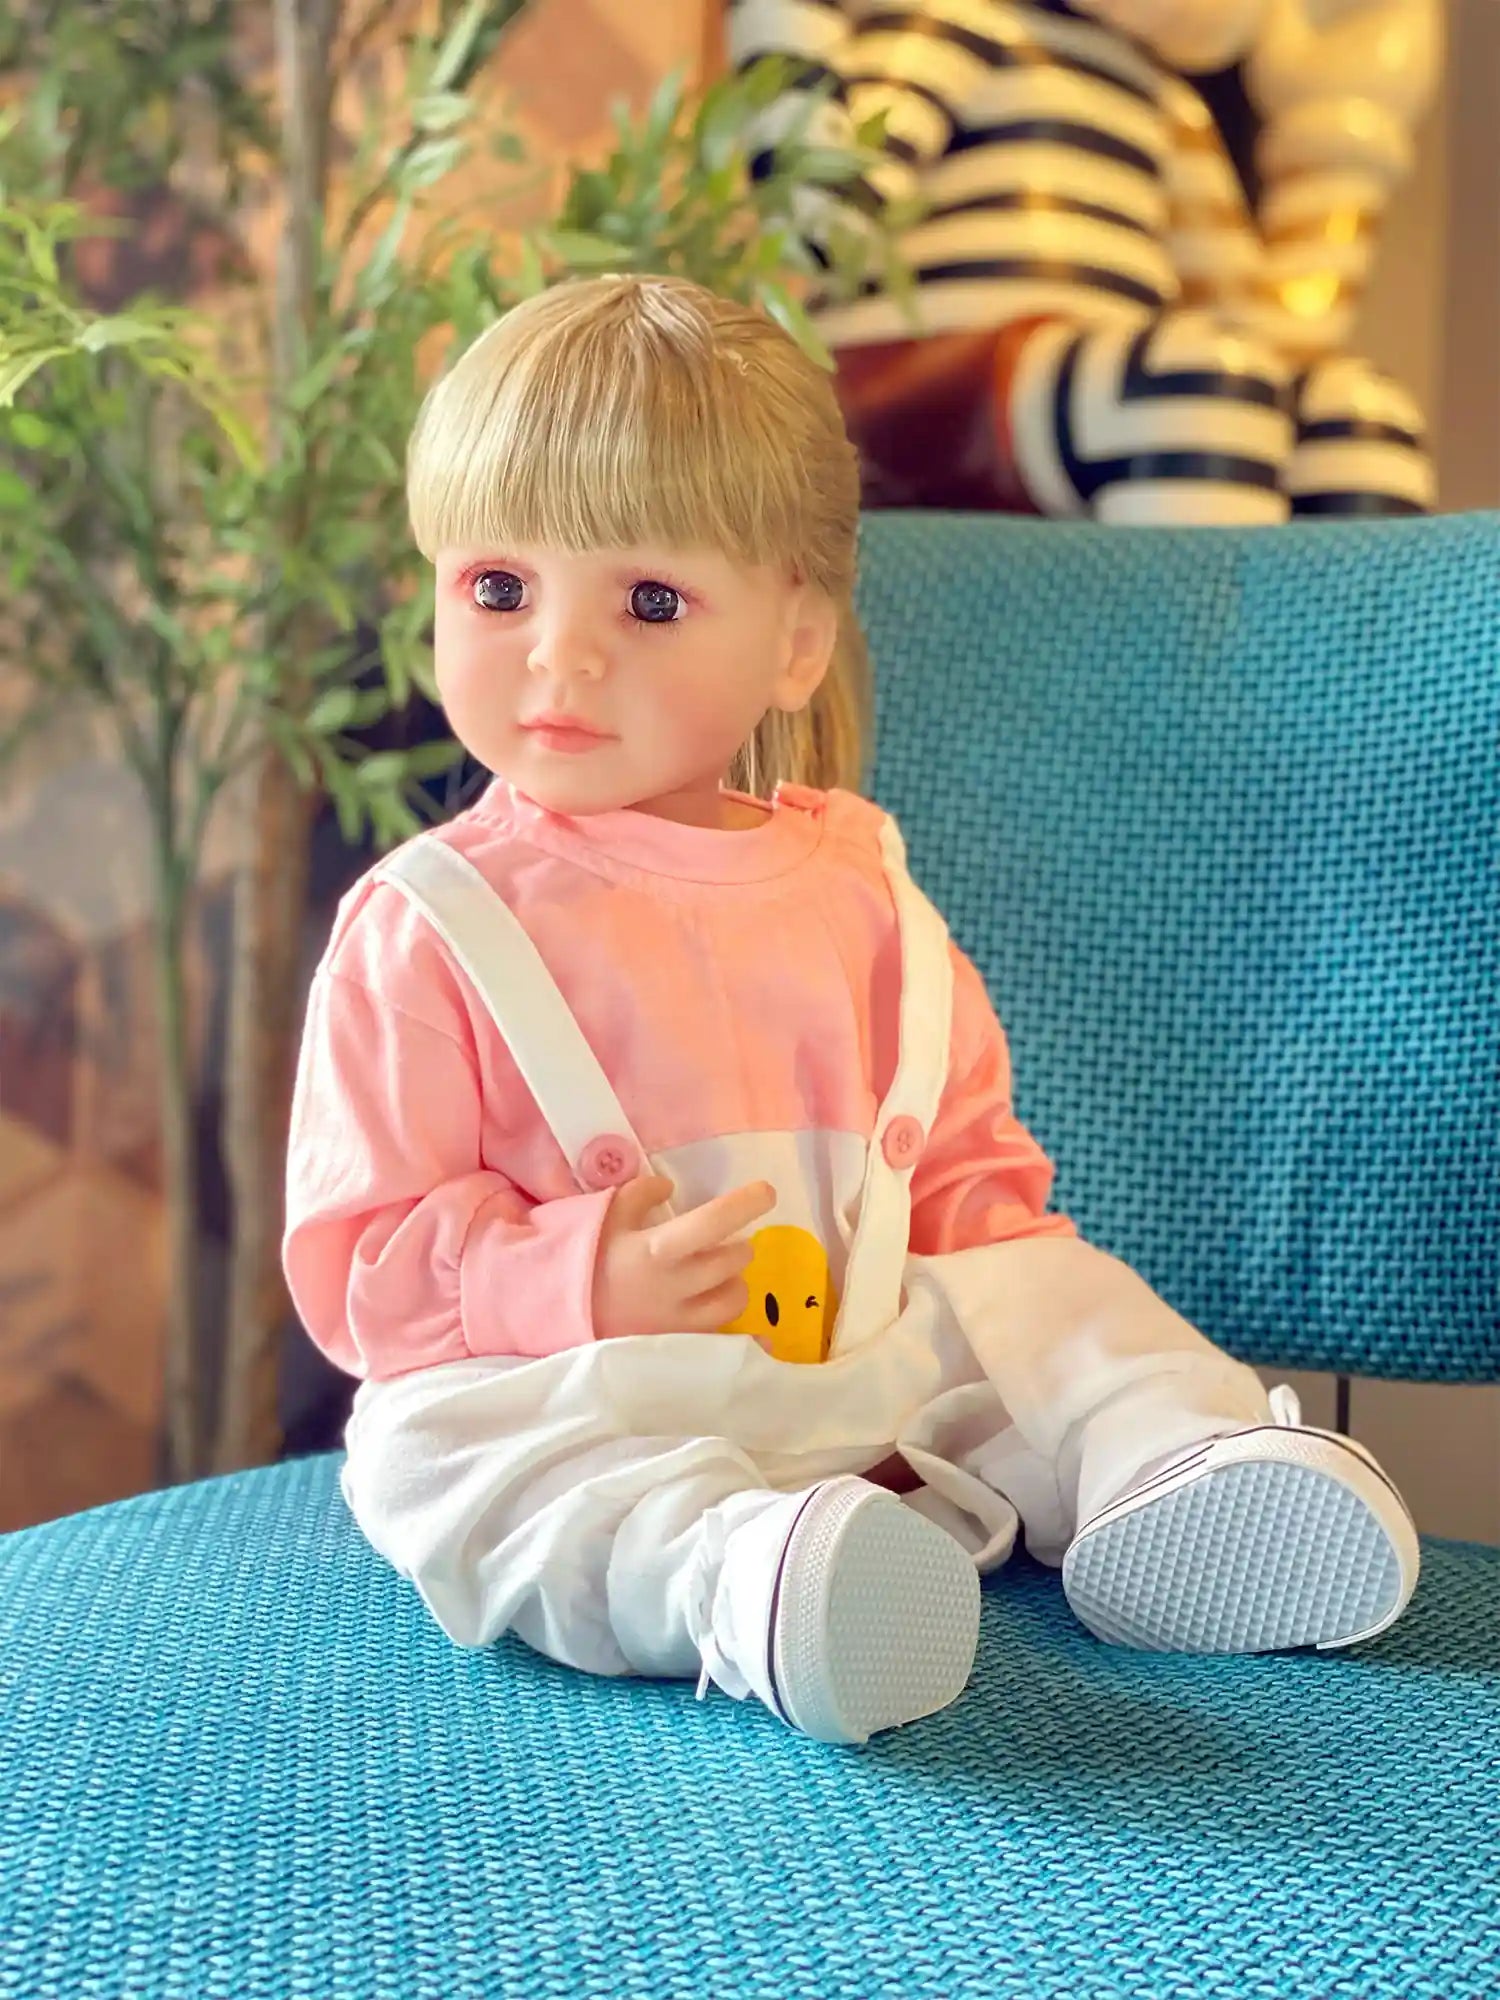 Chimidoll - muñeca renacida de niño pequeño, en un adorable conjunto de tirantes rosas.